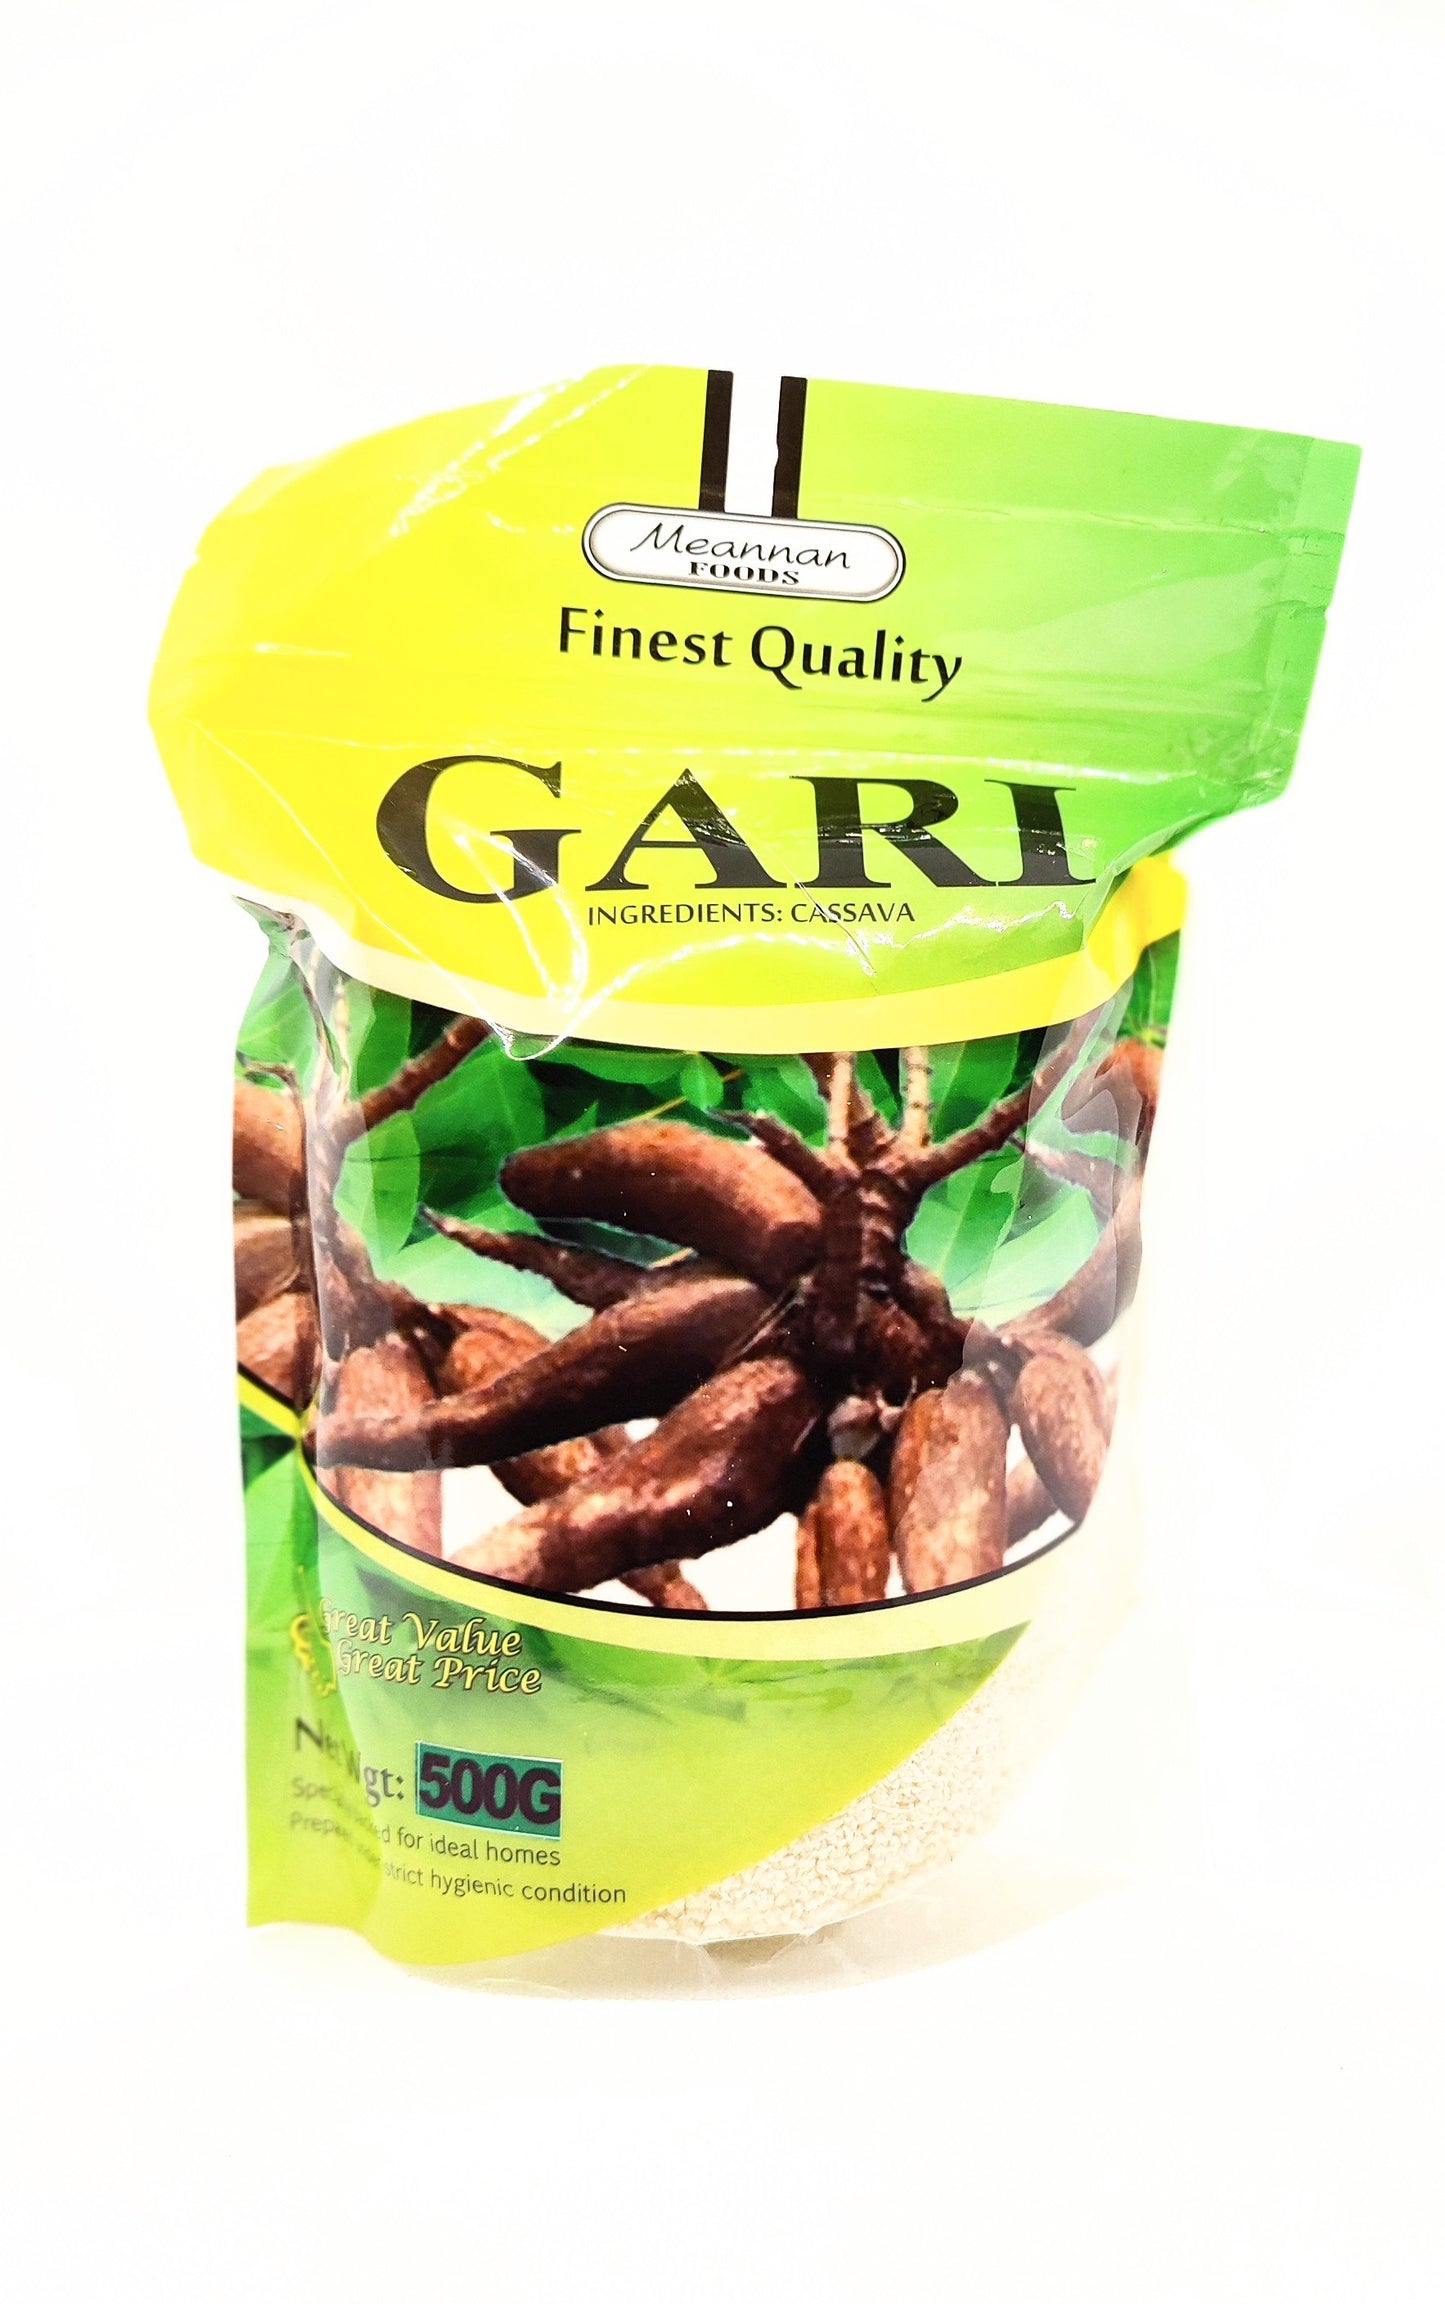 500 gram bag of meannan gari